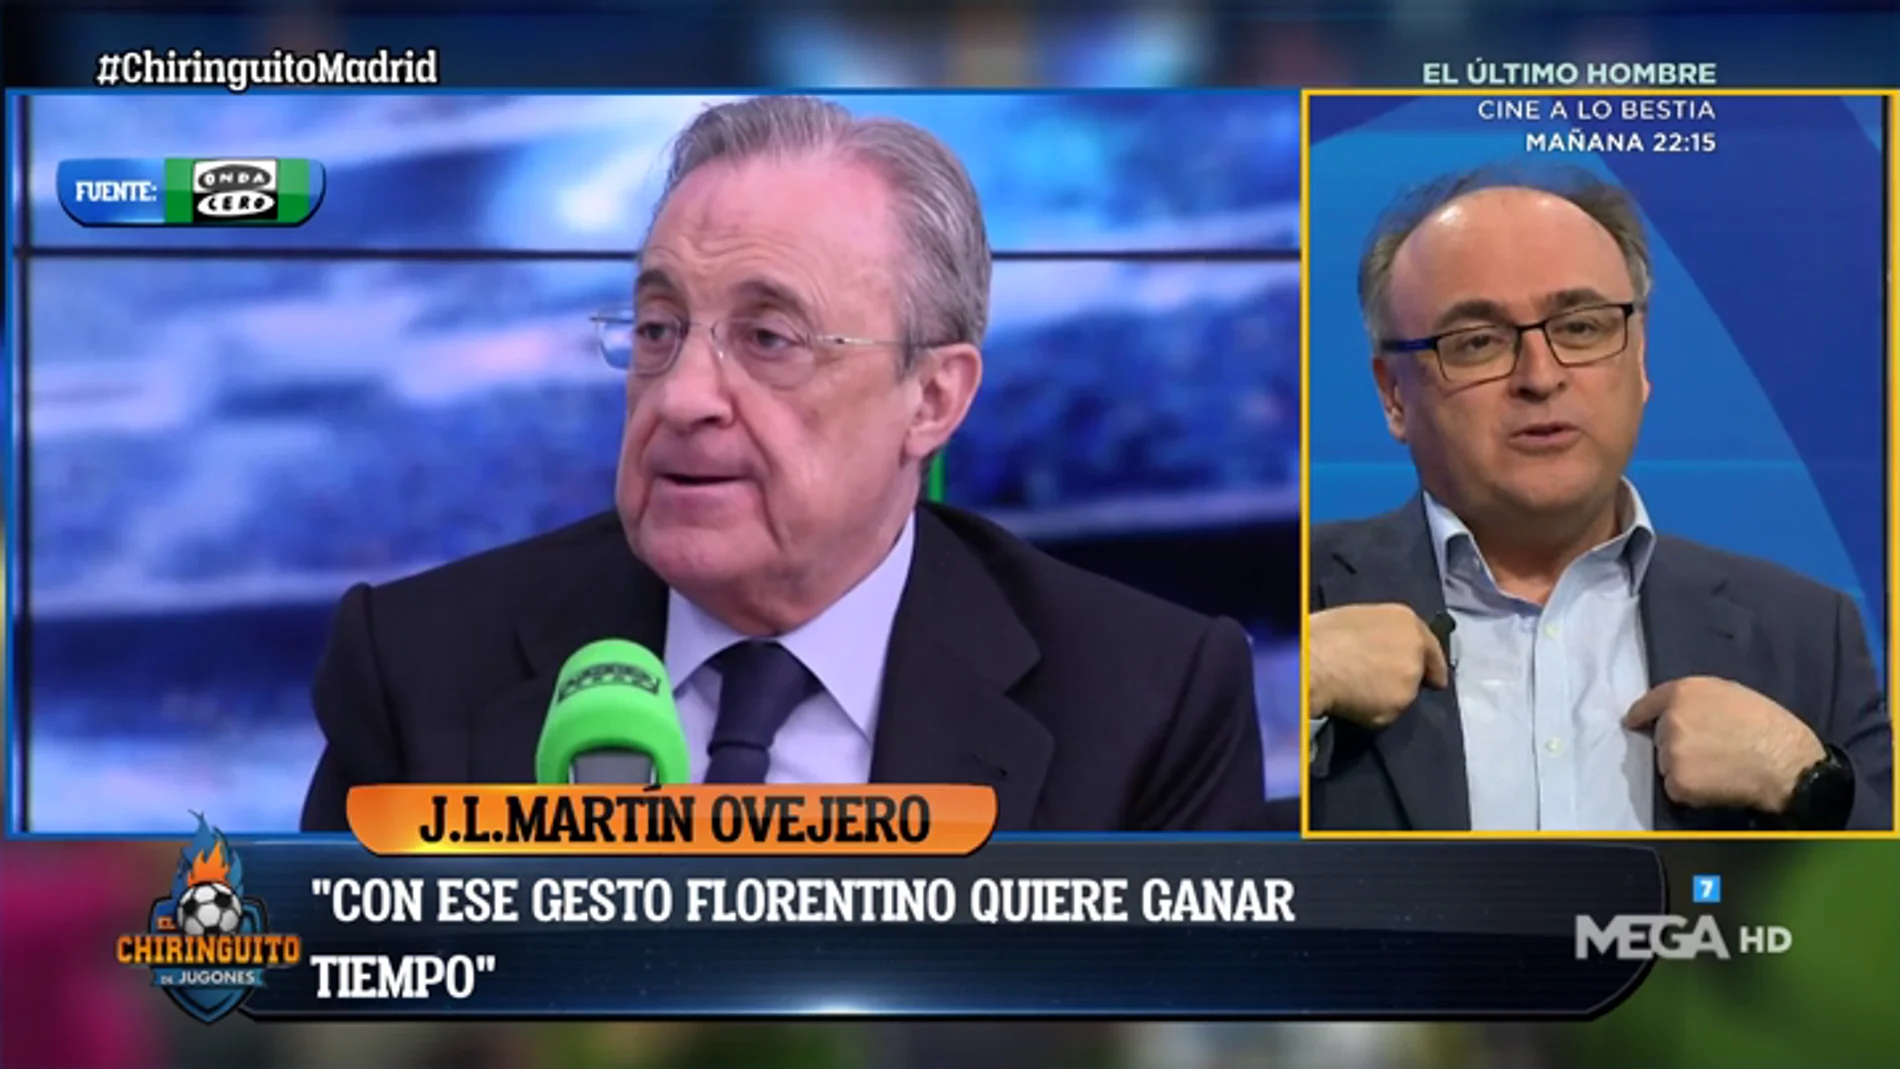 José Luis Ovejero: "Florentino quiere ganar tiempo cuando le preguntan por Mbappé"